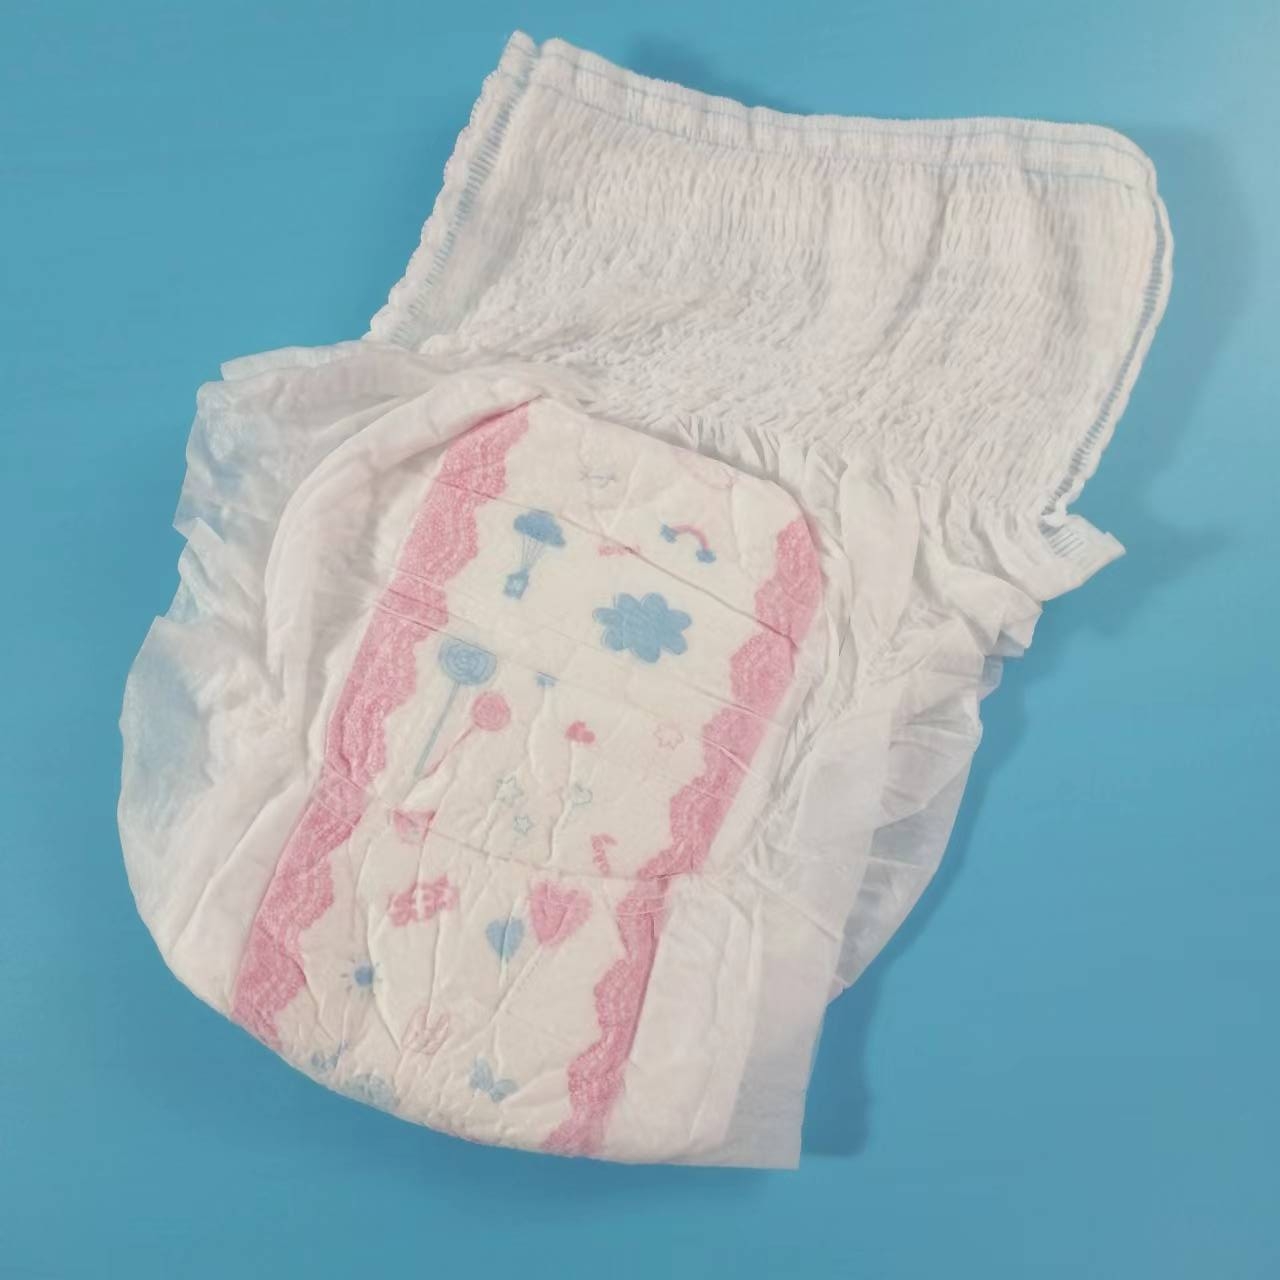 Haute qualité culotte hygiénique type insouciant super confort pur coton pantalon menstruel hygiénique femme nouvelle mère utilisation